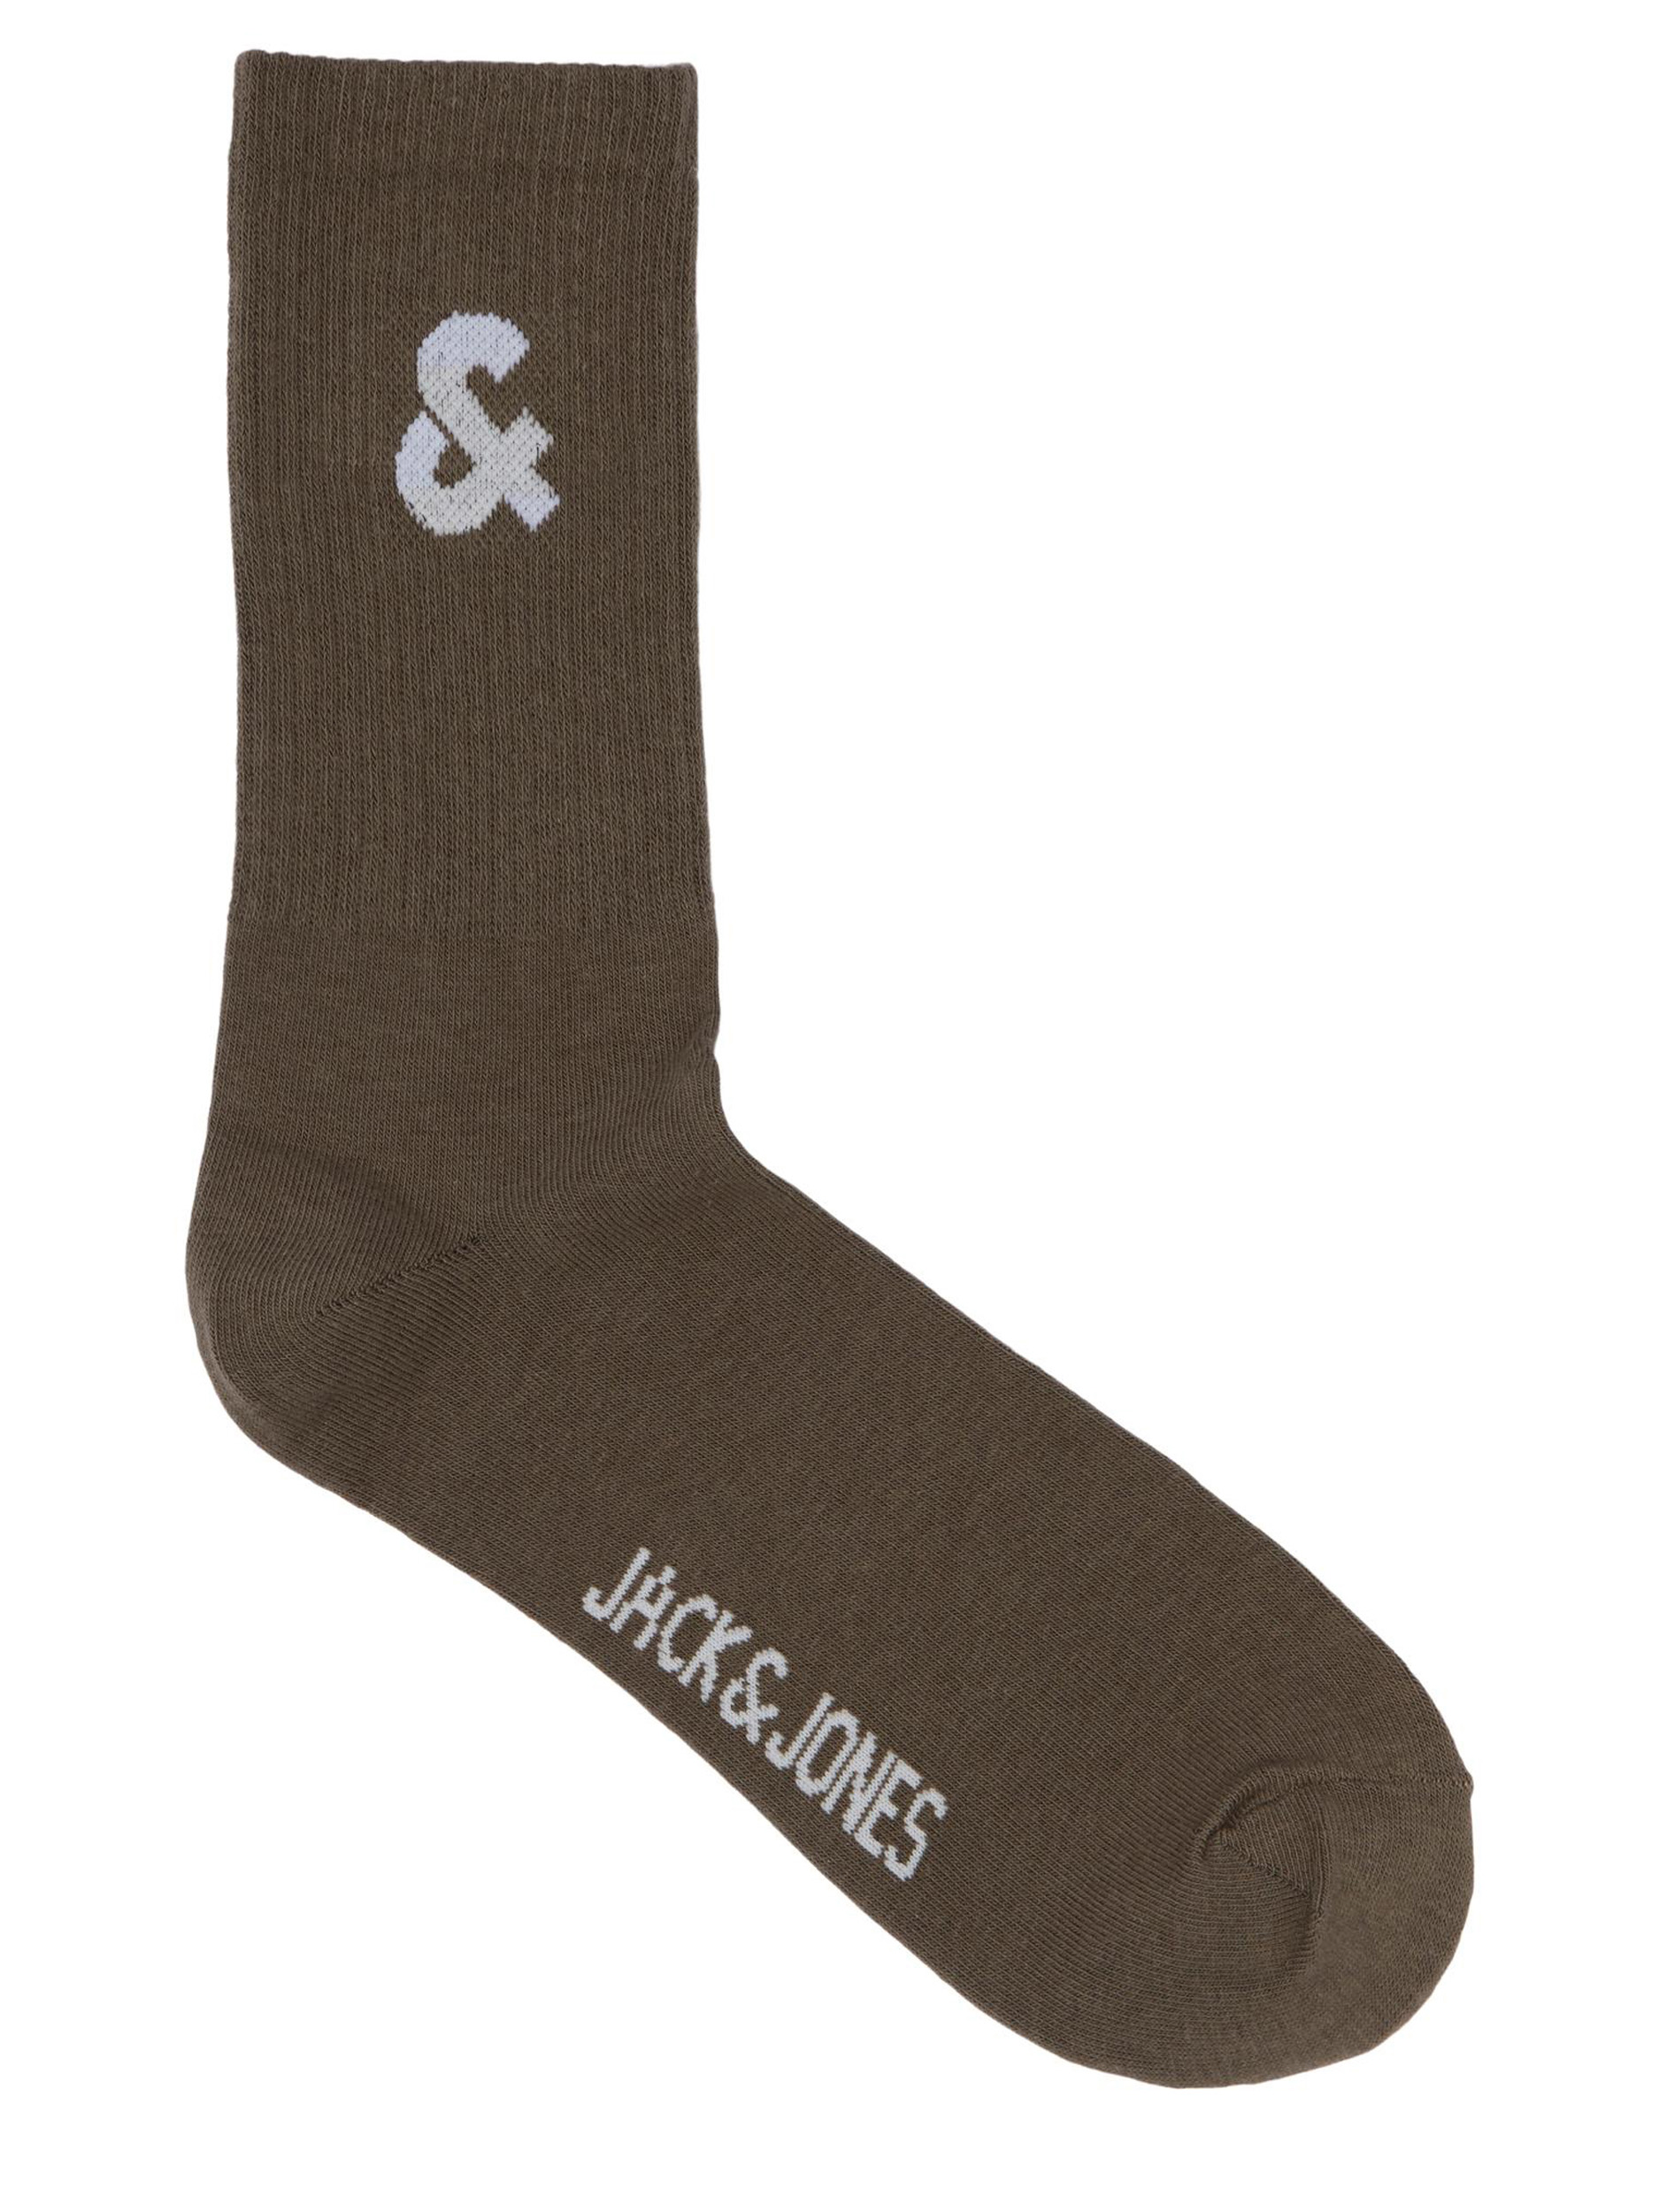 JACK & JONES Brown 3 Pack Tennis Socks | BadRhino 3